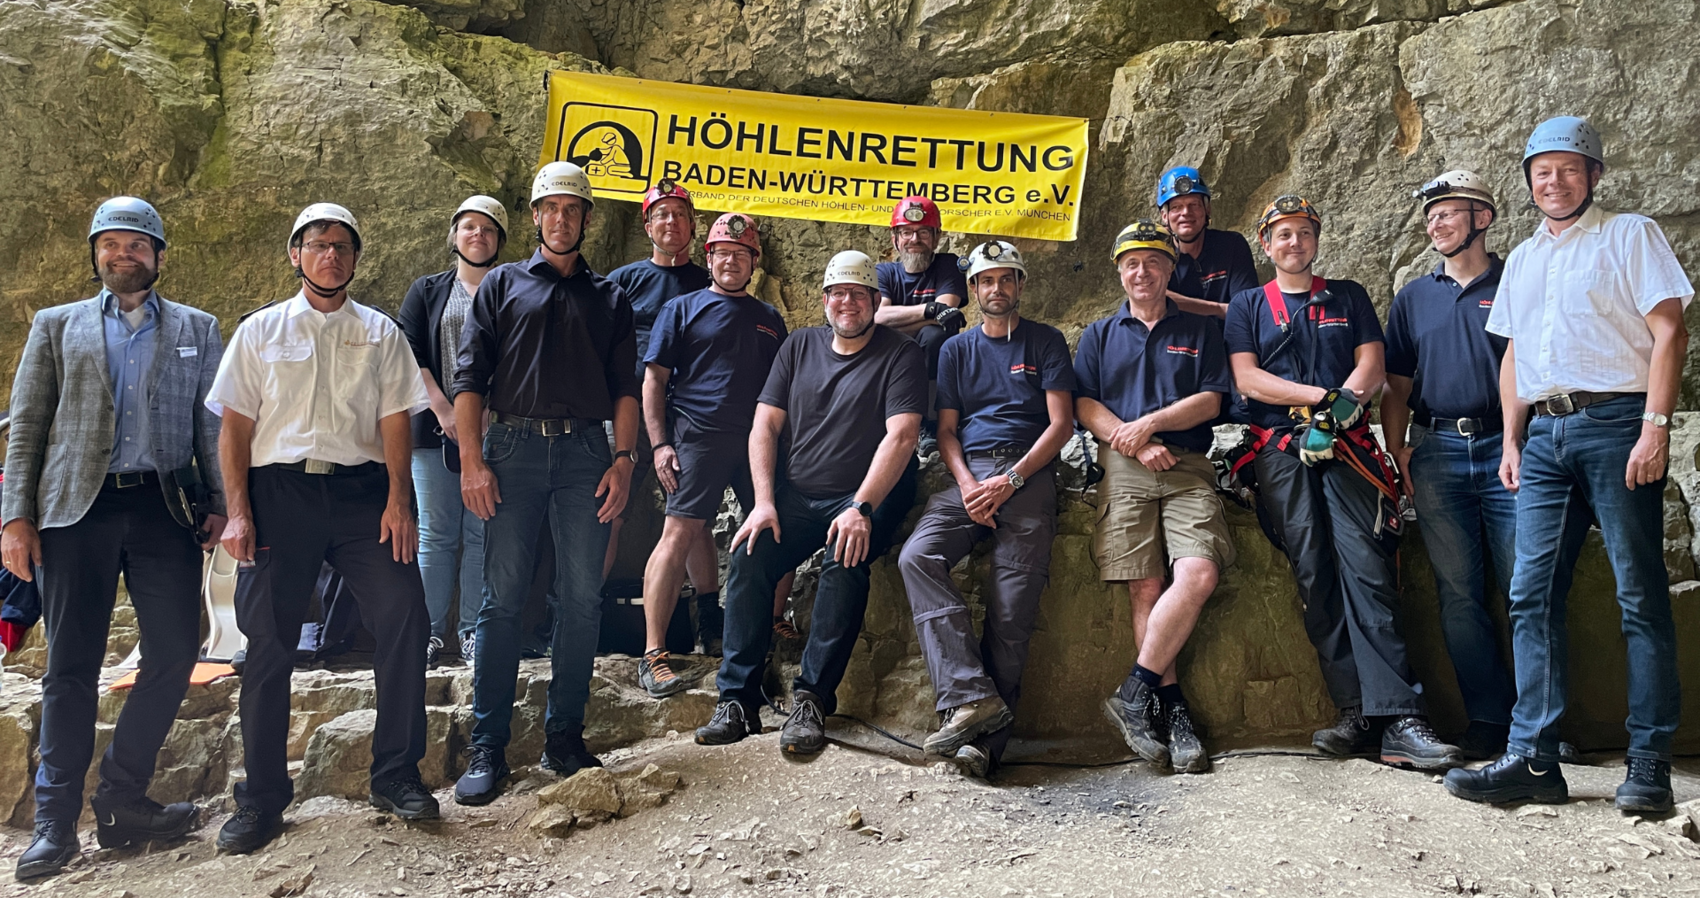 Das Gruppenfoto im Eingangsbereich der Falkensteiner Höhle zeigt Mitglieder der Höhlenrettung Baden-Württemberg e.V.. Auf der rechten Seite steht Herr Regierungspräsident Klaus Tappeser. Im oberen Bildbereich ist ein Banner mit dem Logo des Vereins an der Höhlenwand zu sehen.